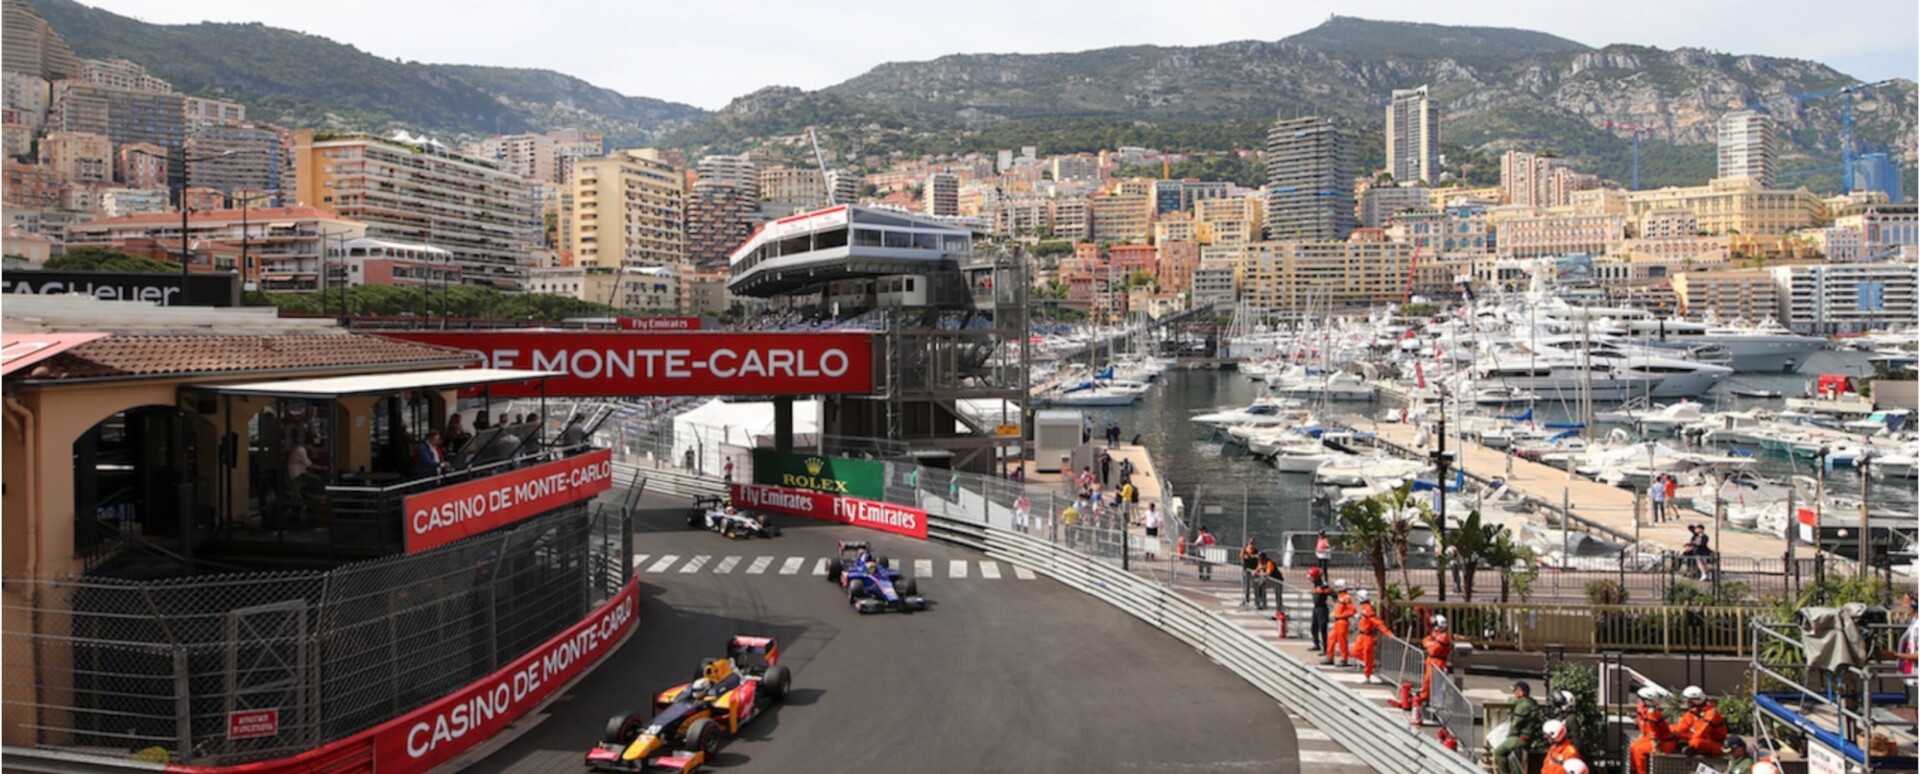                                                                                                     Spotlight on Monaco
                                                                                            